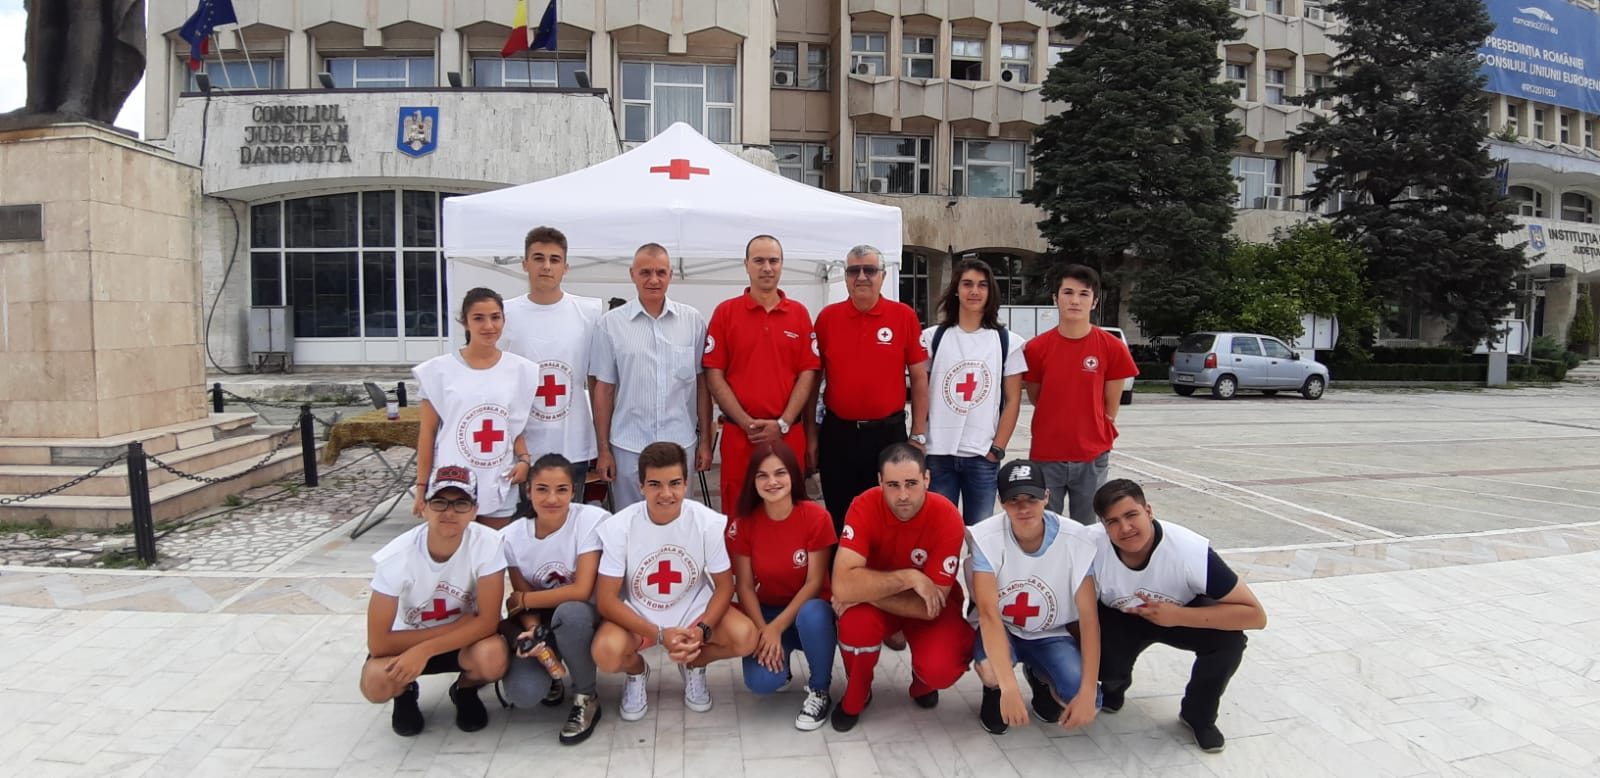 You are currently viewing În data de 4 iulie, moment aniversar pentru Crucea Roșie Română, marcând 143 de ani de activitate neîntreruptă, voluntarii dâmbovițeni au sărbătorit prin organizarea unei campanii de sănătate în centrul Municipiului Târgoviște de care au beneficiat aproximativ 150 de persoane.